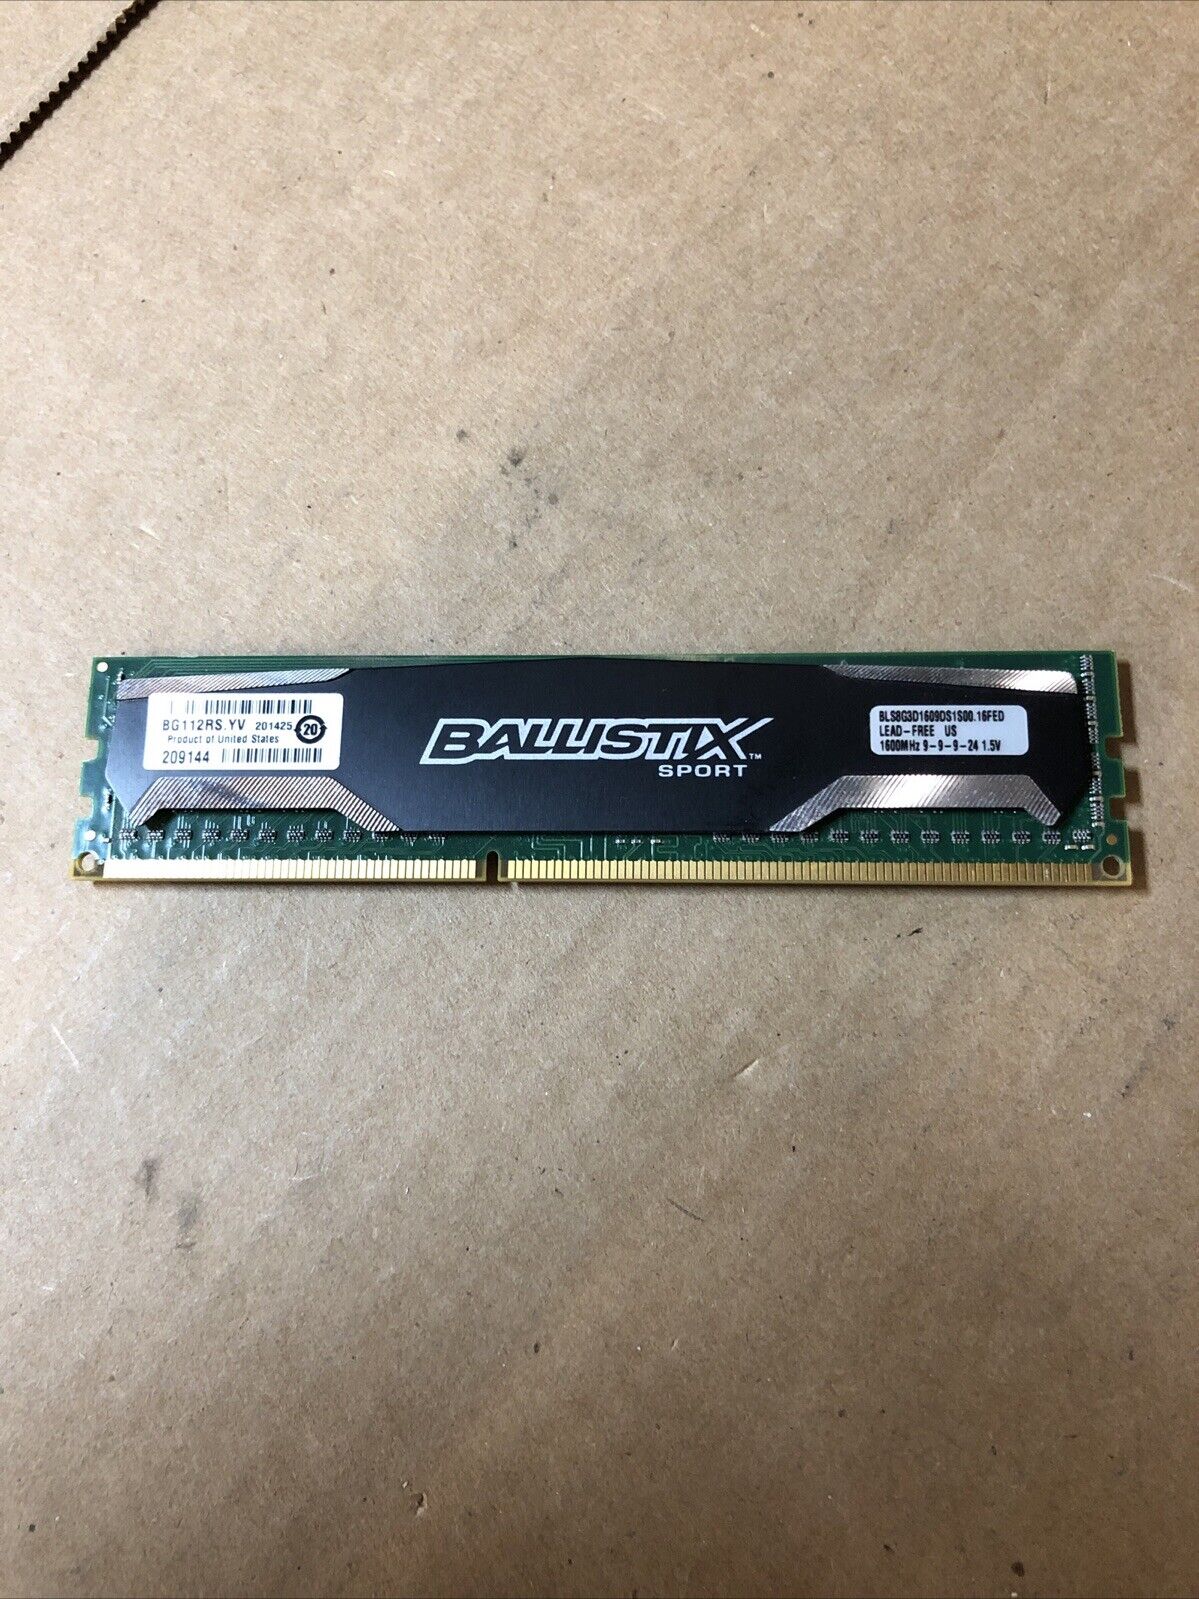 Crucial BALLISTIX 8GB DDR3 1600MHz Desktop RAM BLS8G3D1609DS1S00 DIMM Original